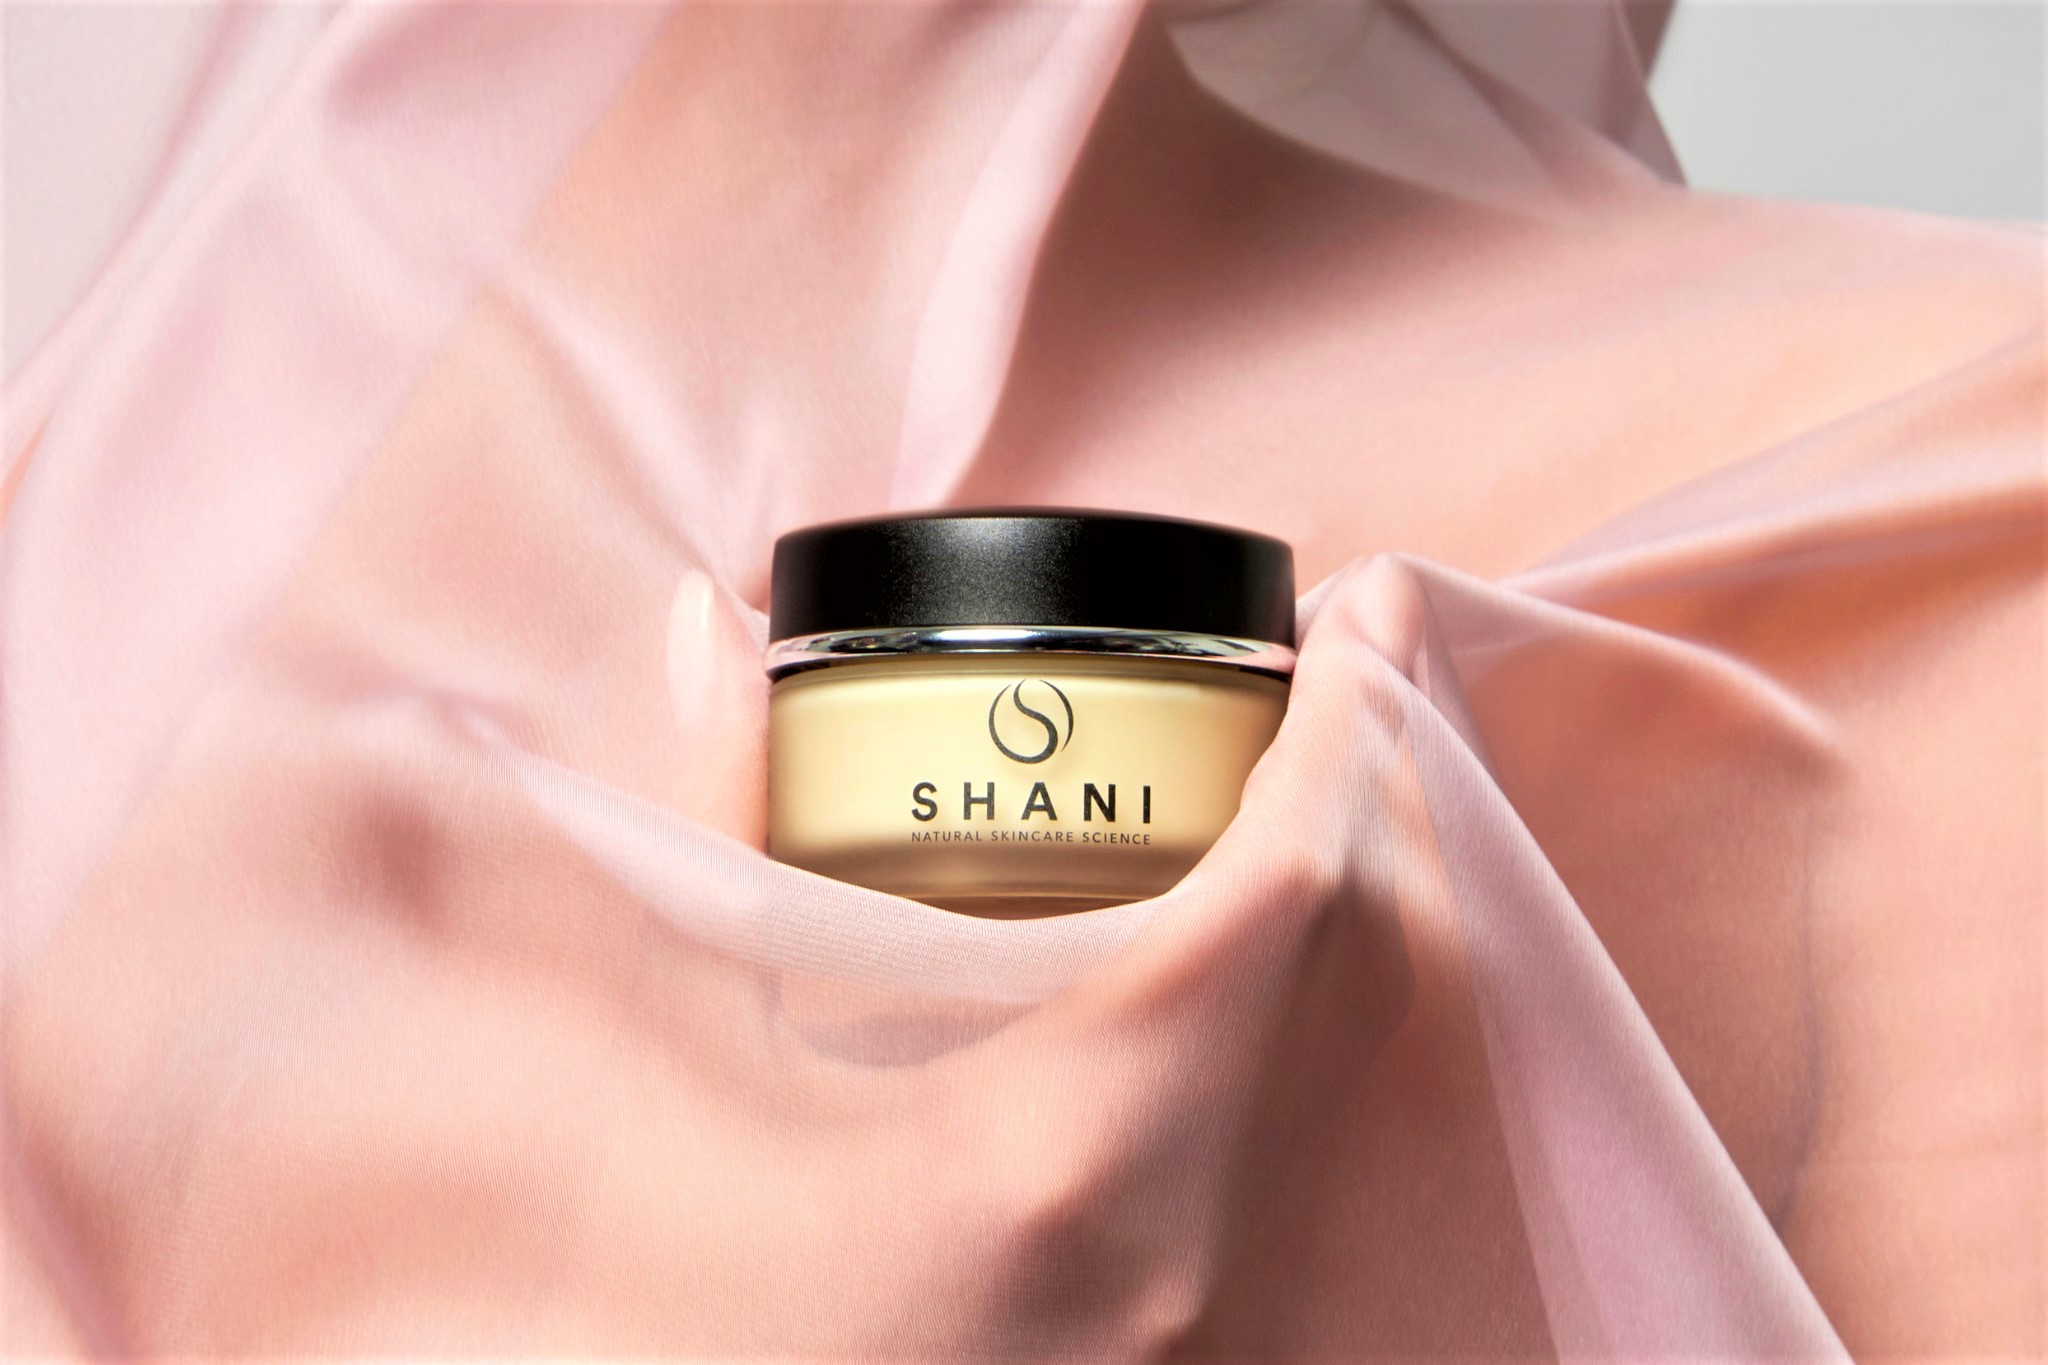 Shani, beauty brand italiano, presenta la nuova campagna “Be ready to shine”